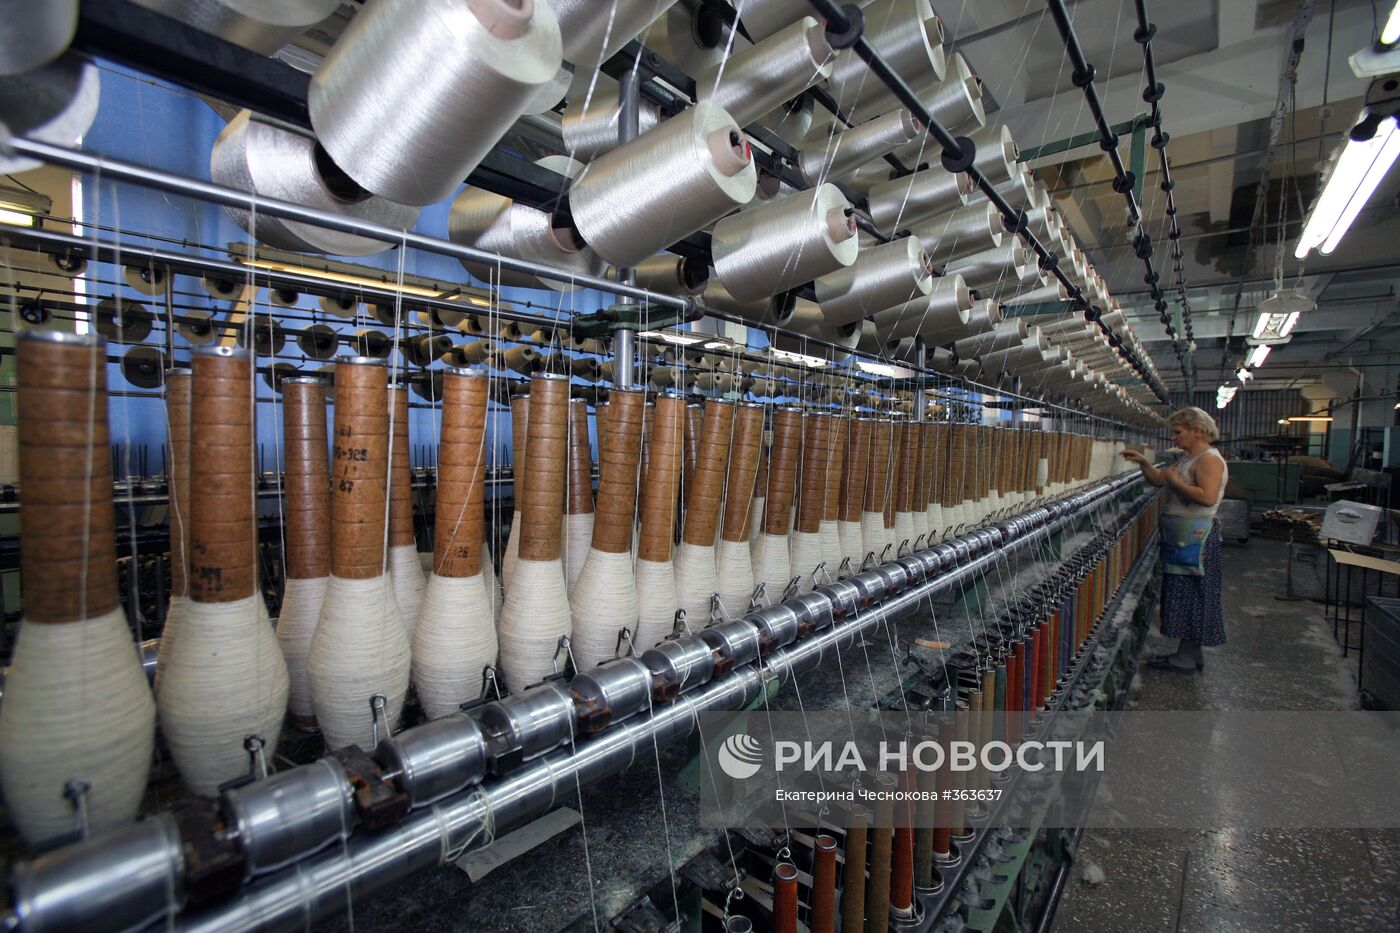 Оренбург фабрика пуховых